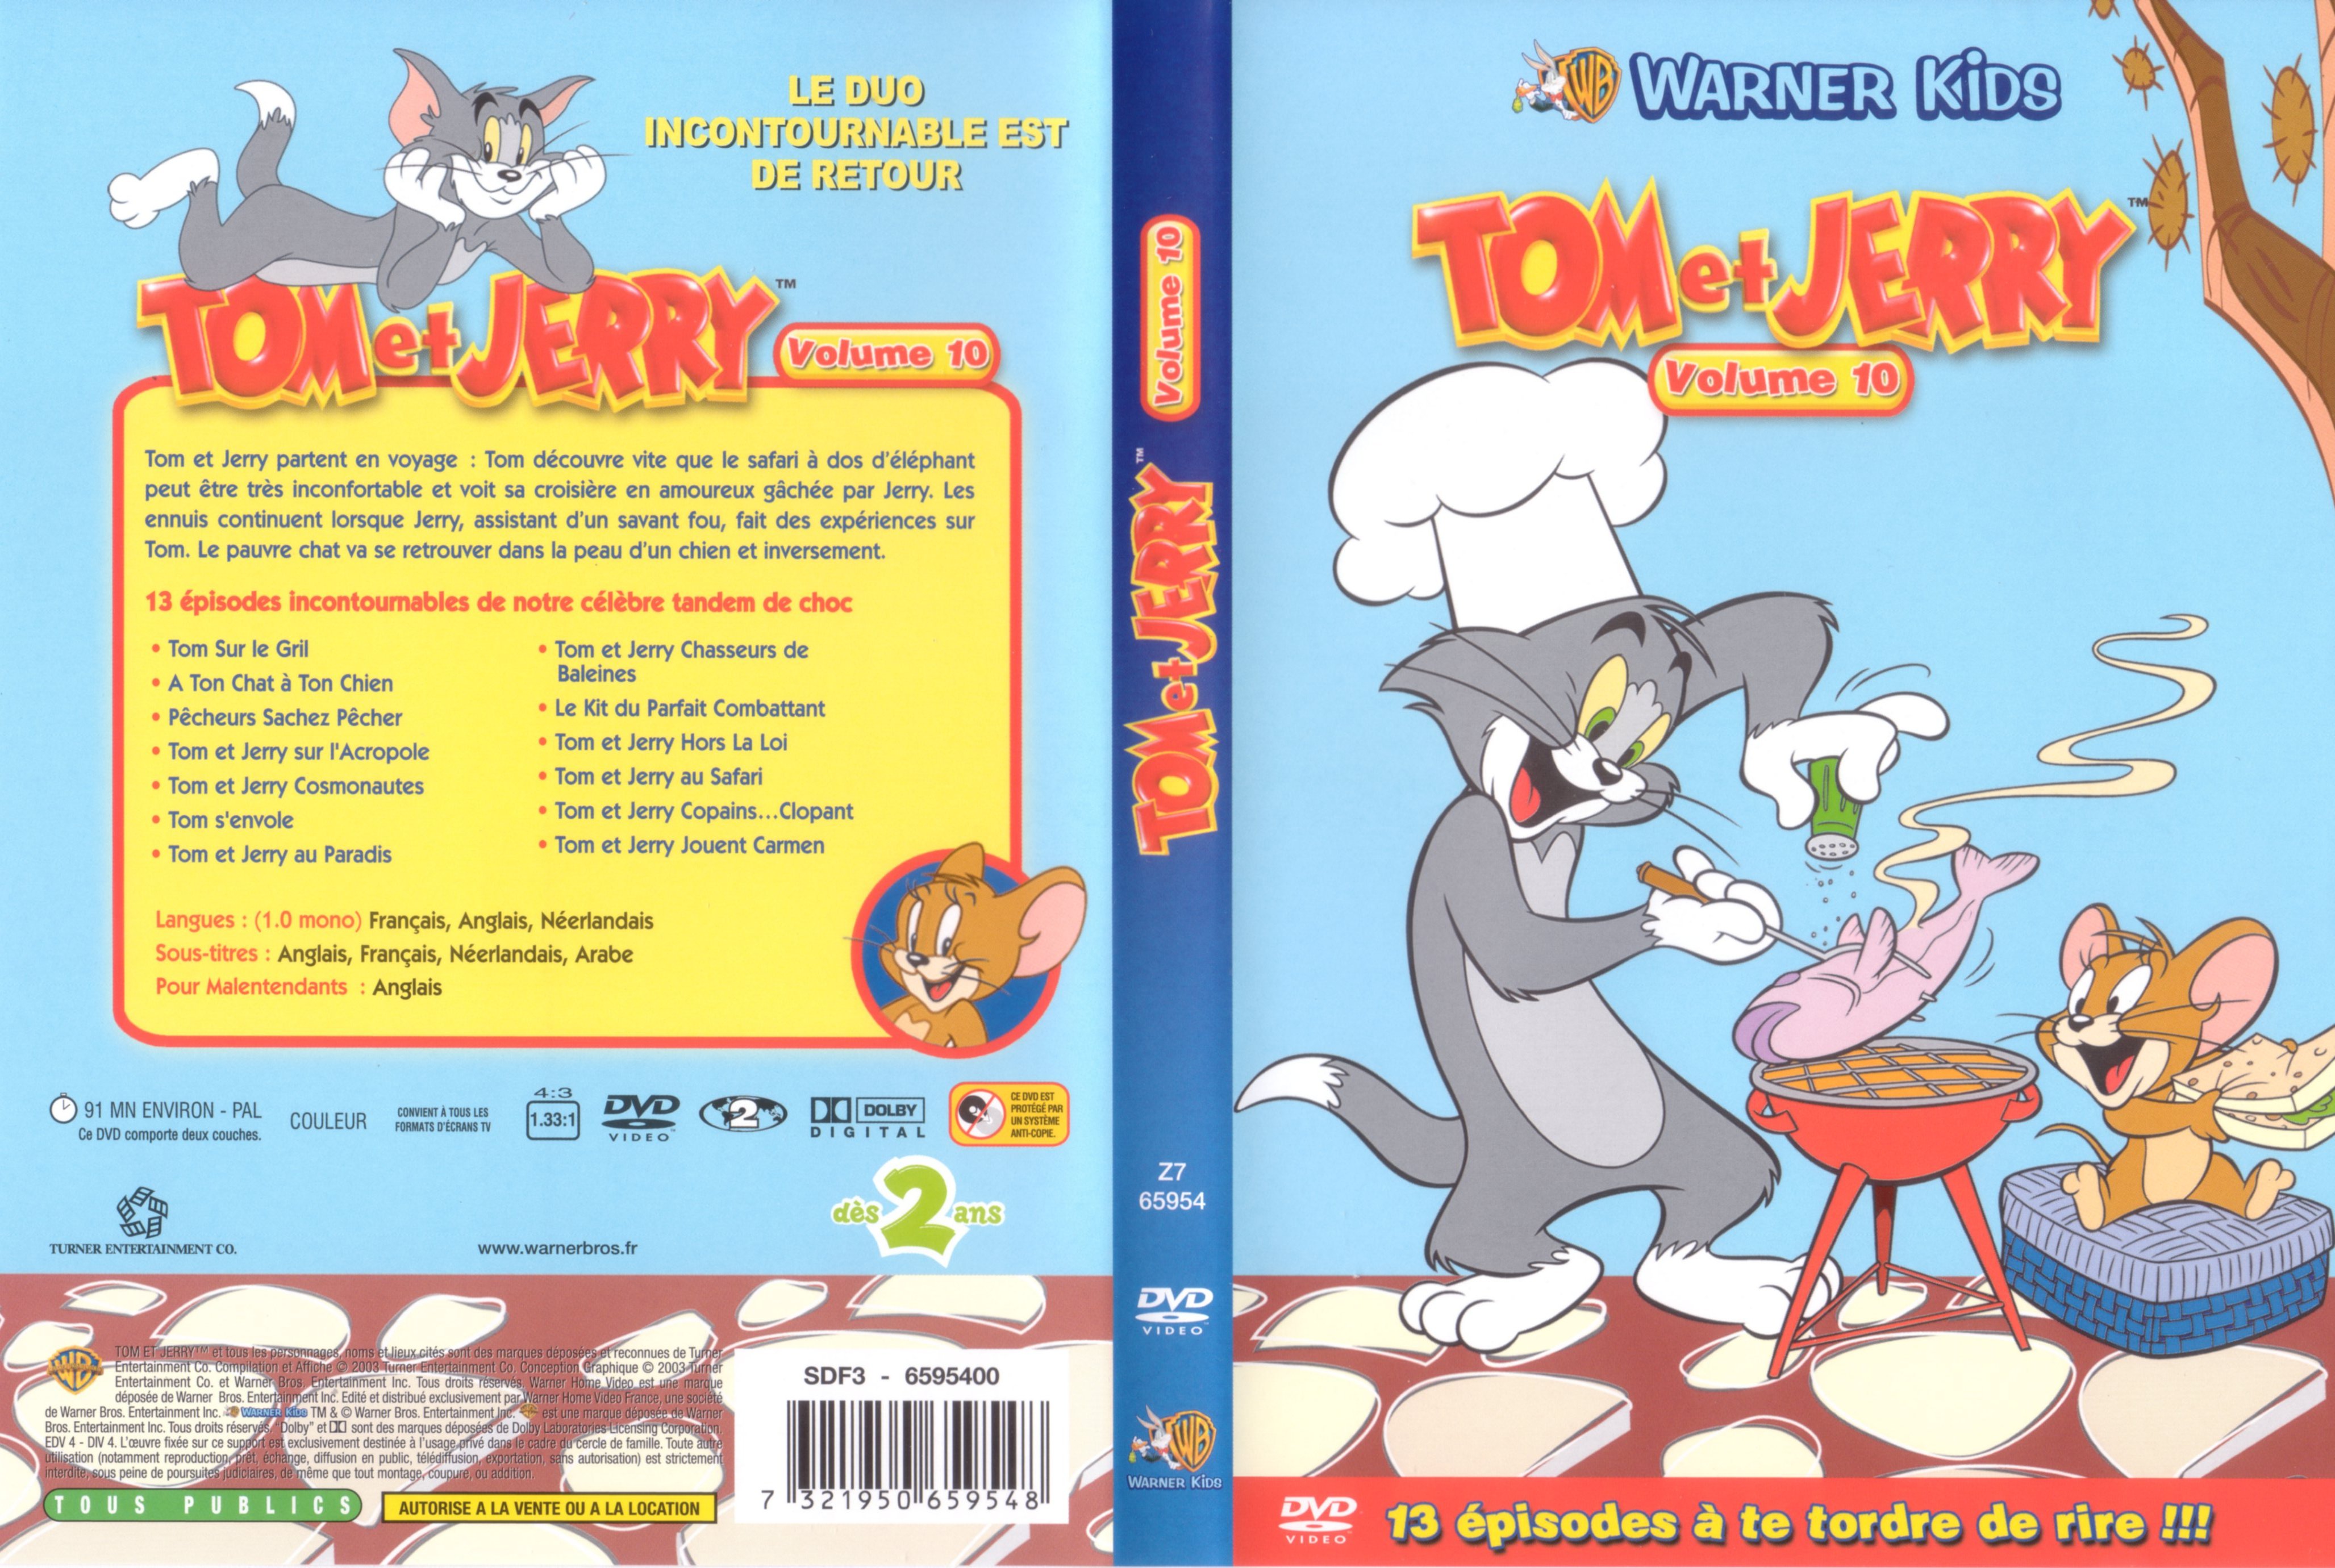 Jaquette DVD Tom et Jerry vol 10